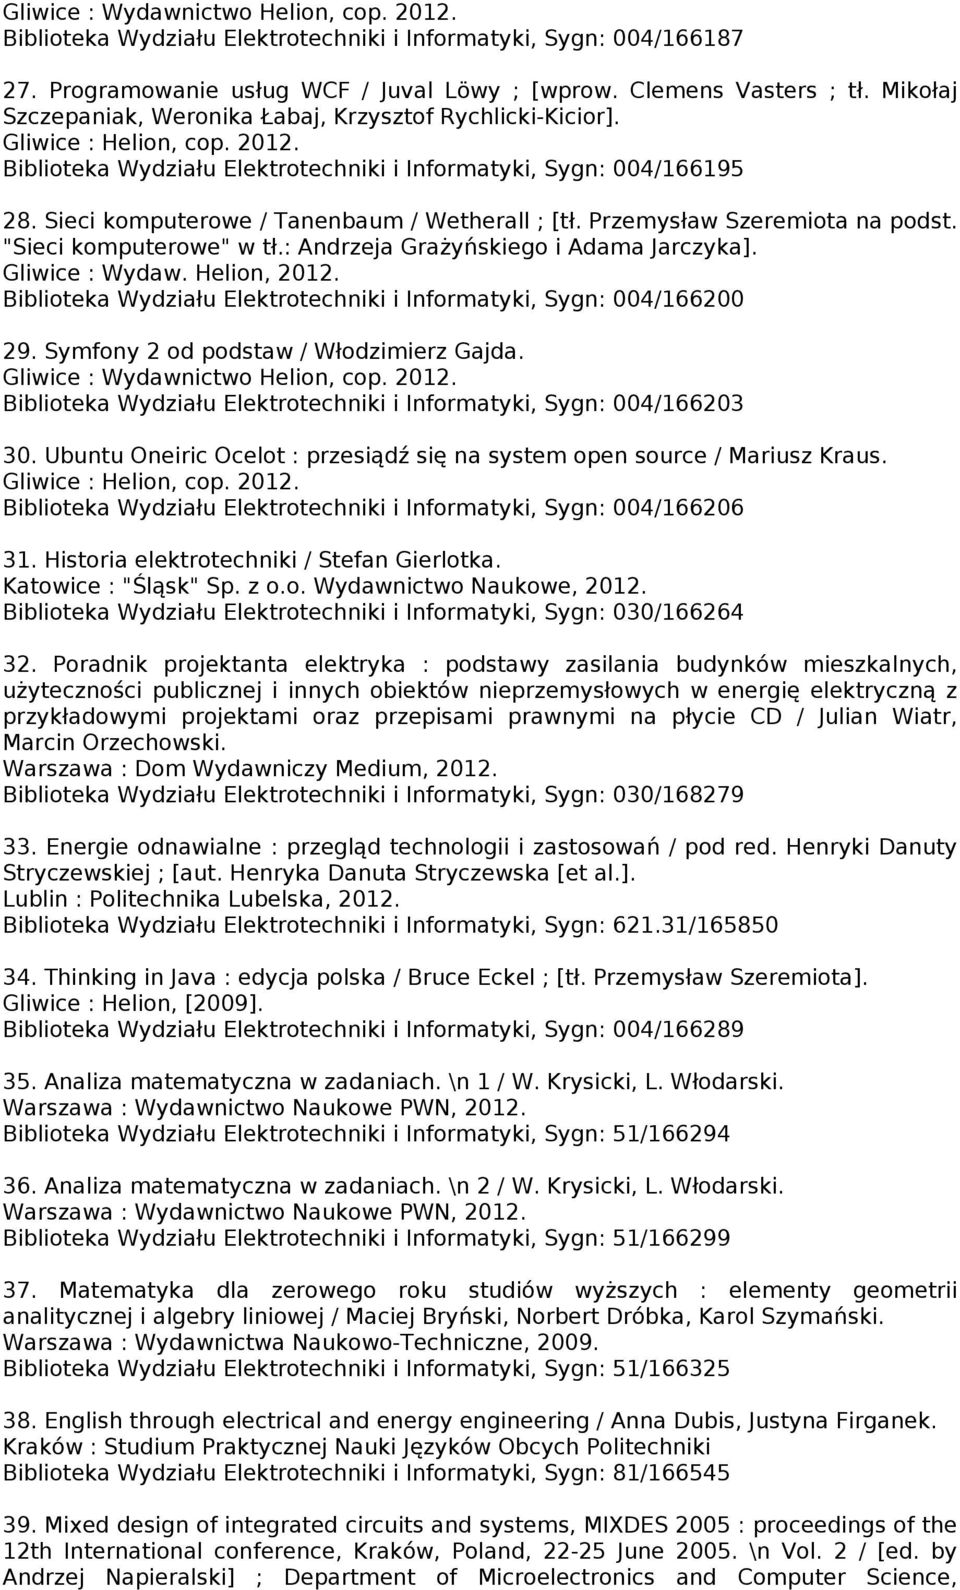 Sieci komputerowe / Tanenbaum / Wetherall ; [tł. Przemysław Szeremiota na podst. "Sieci komputerowe" w tł.: Andrzeja Grażyńskiego i Adama Jarczyka]. Gliwice : Wydaw. Helion, 2012.